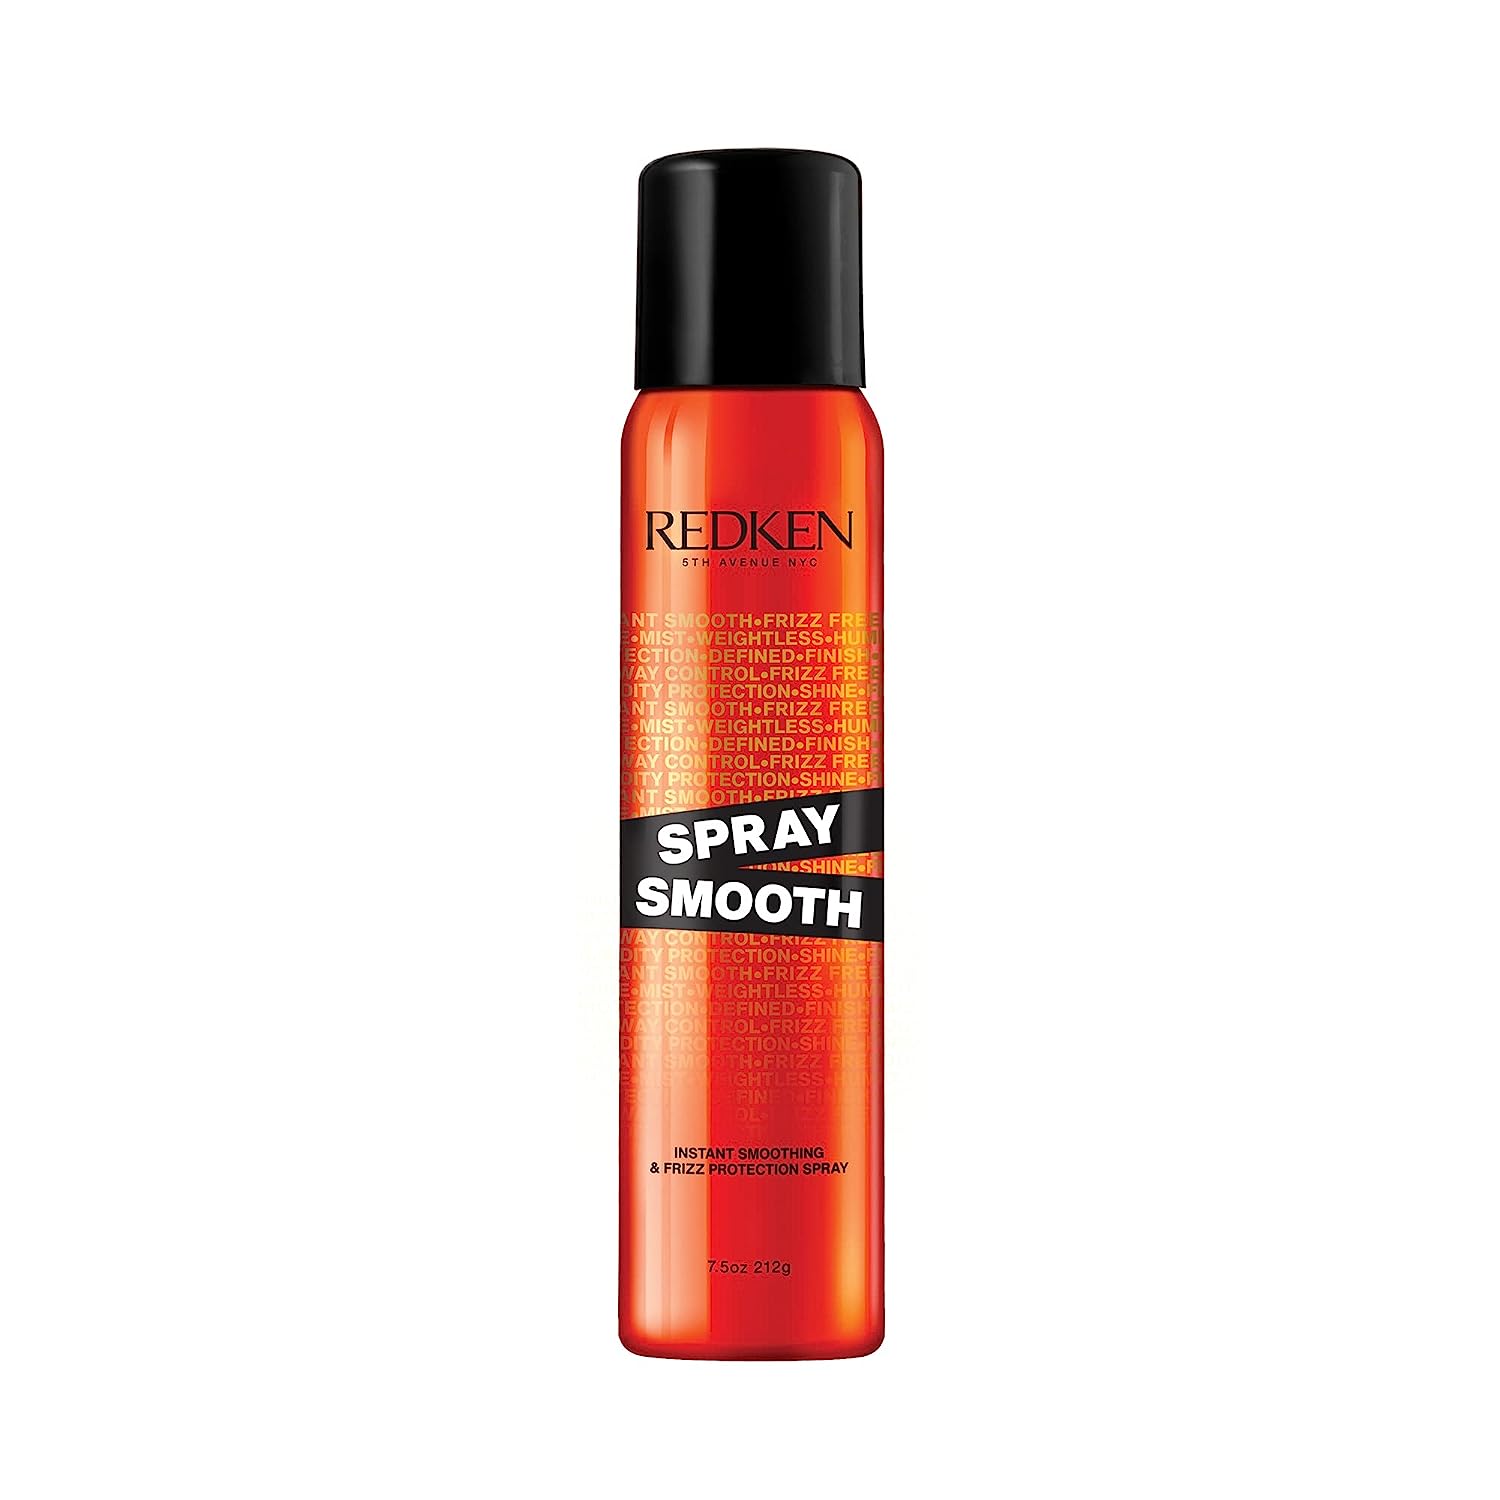 Redken Spray Smooth Anti Frizz Treatment Spray | Frizz [...]